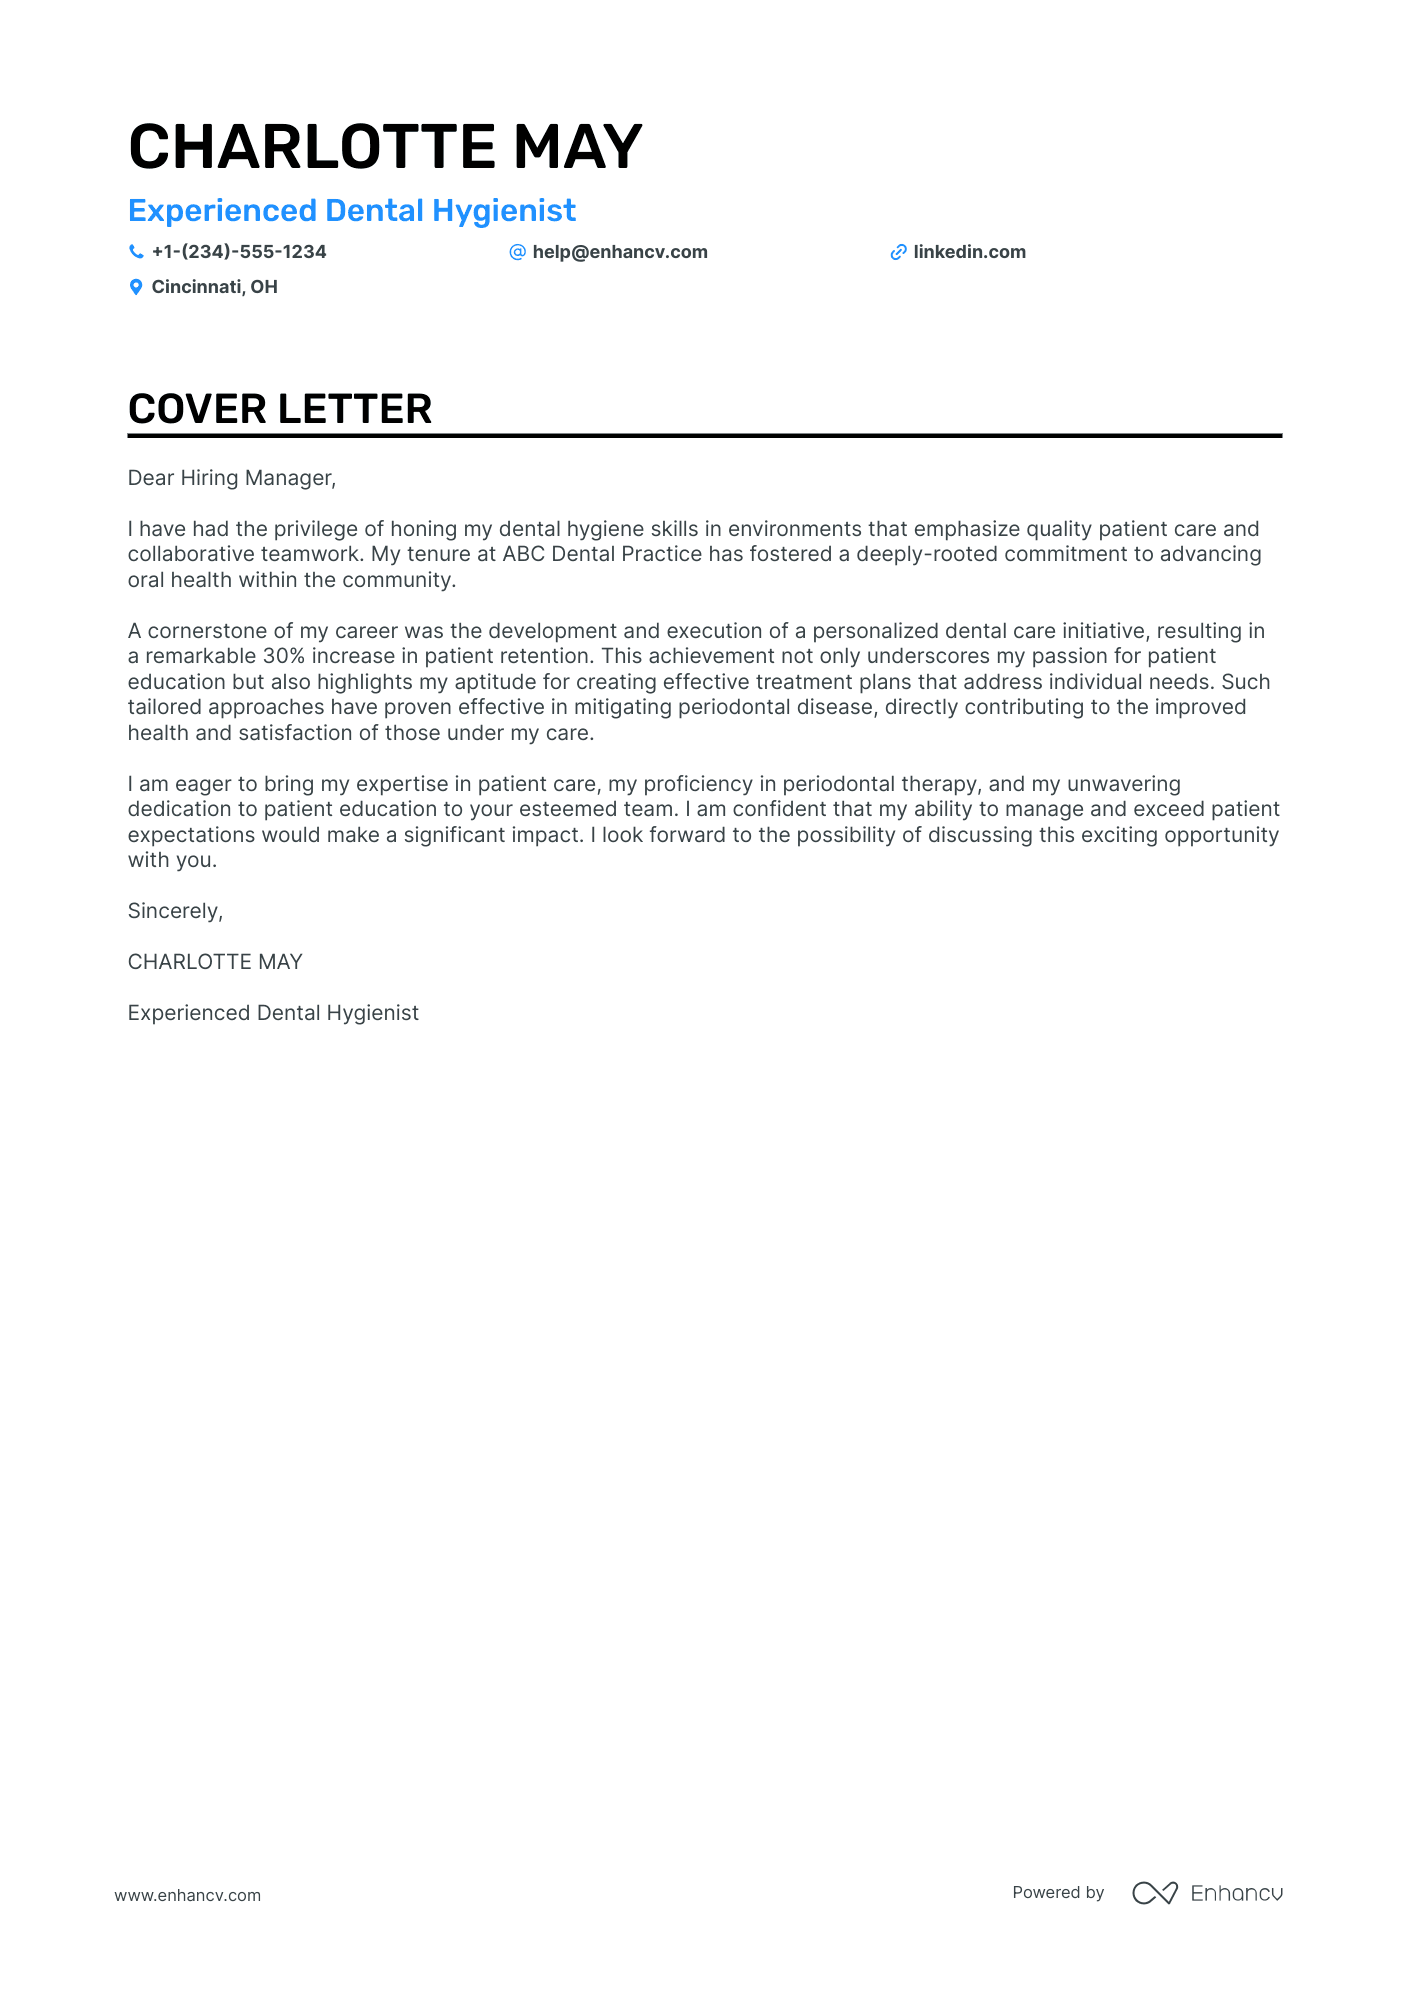 sample cover letter for dental assistant